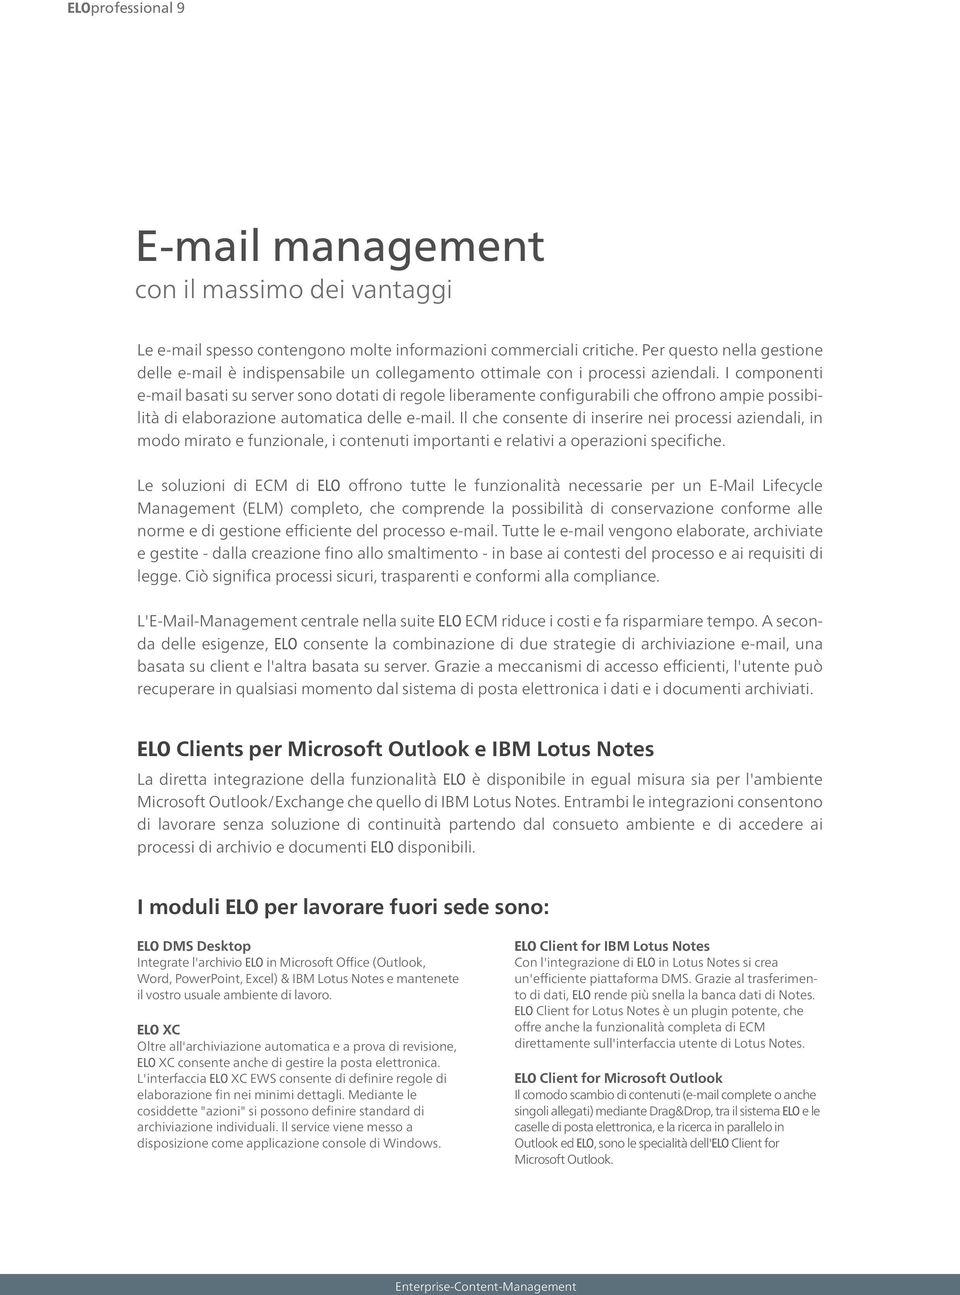 I componenti e-mail basati su server sono dotati di regole liberamente configurabili che offrono ampie possibilità di elaborazione automatica delle e-mail.